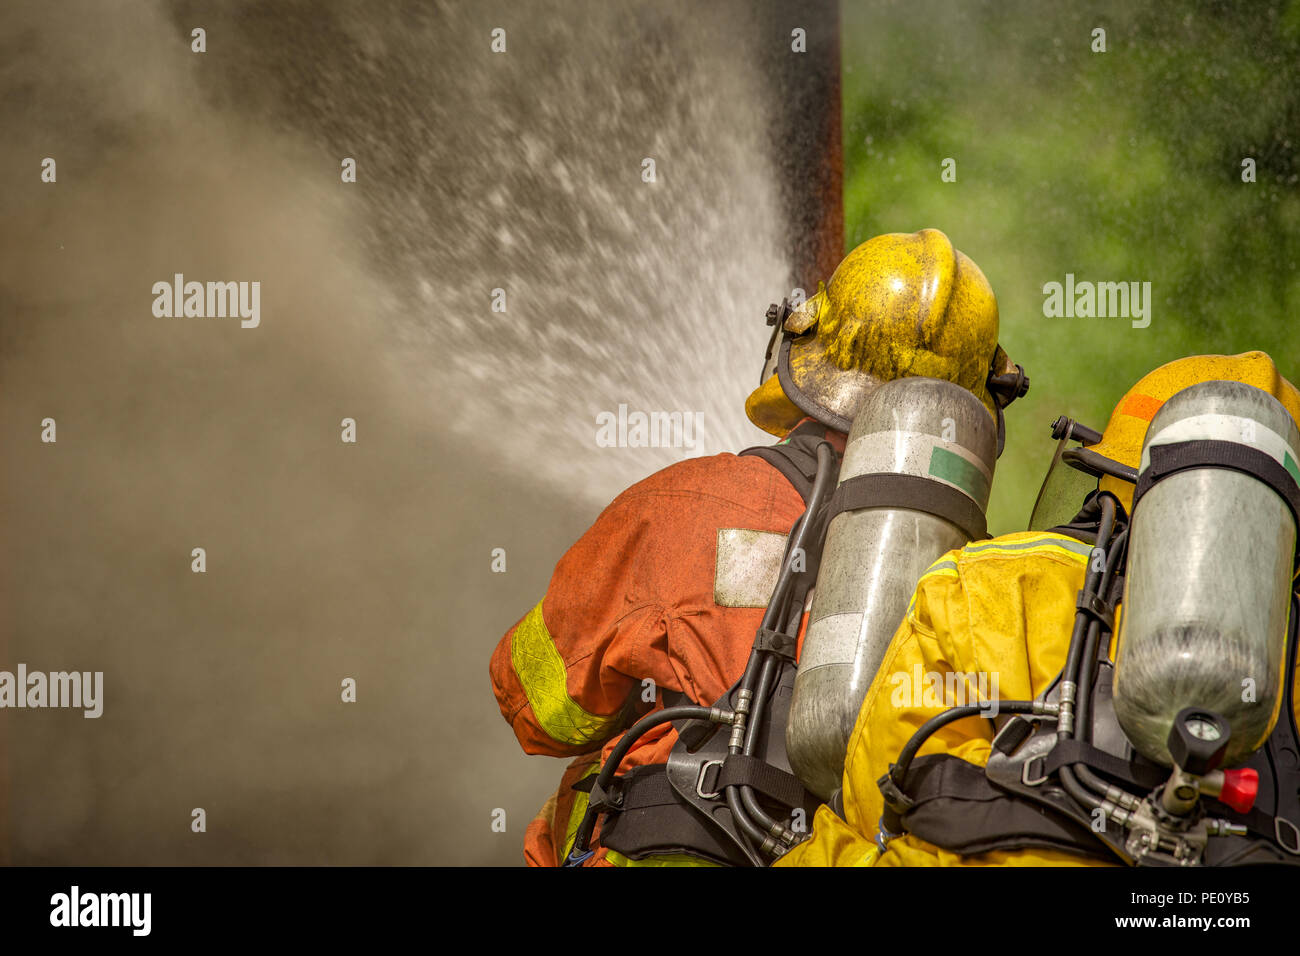 La acción de cierre de dos bomberos de pulverización de agua de alta presión por la boquilla al fuego y humo, con copia espacio en tono cinematográfico Foto de stock